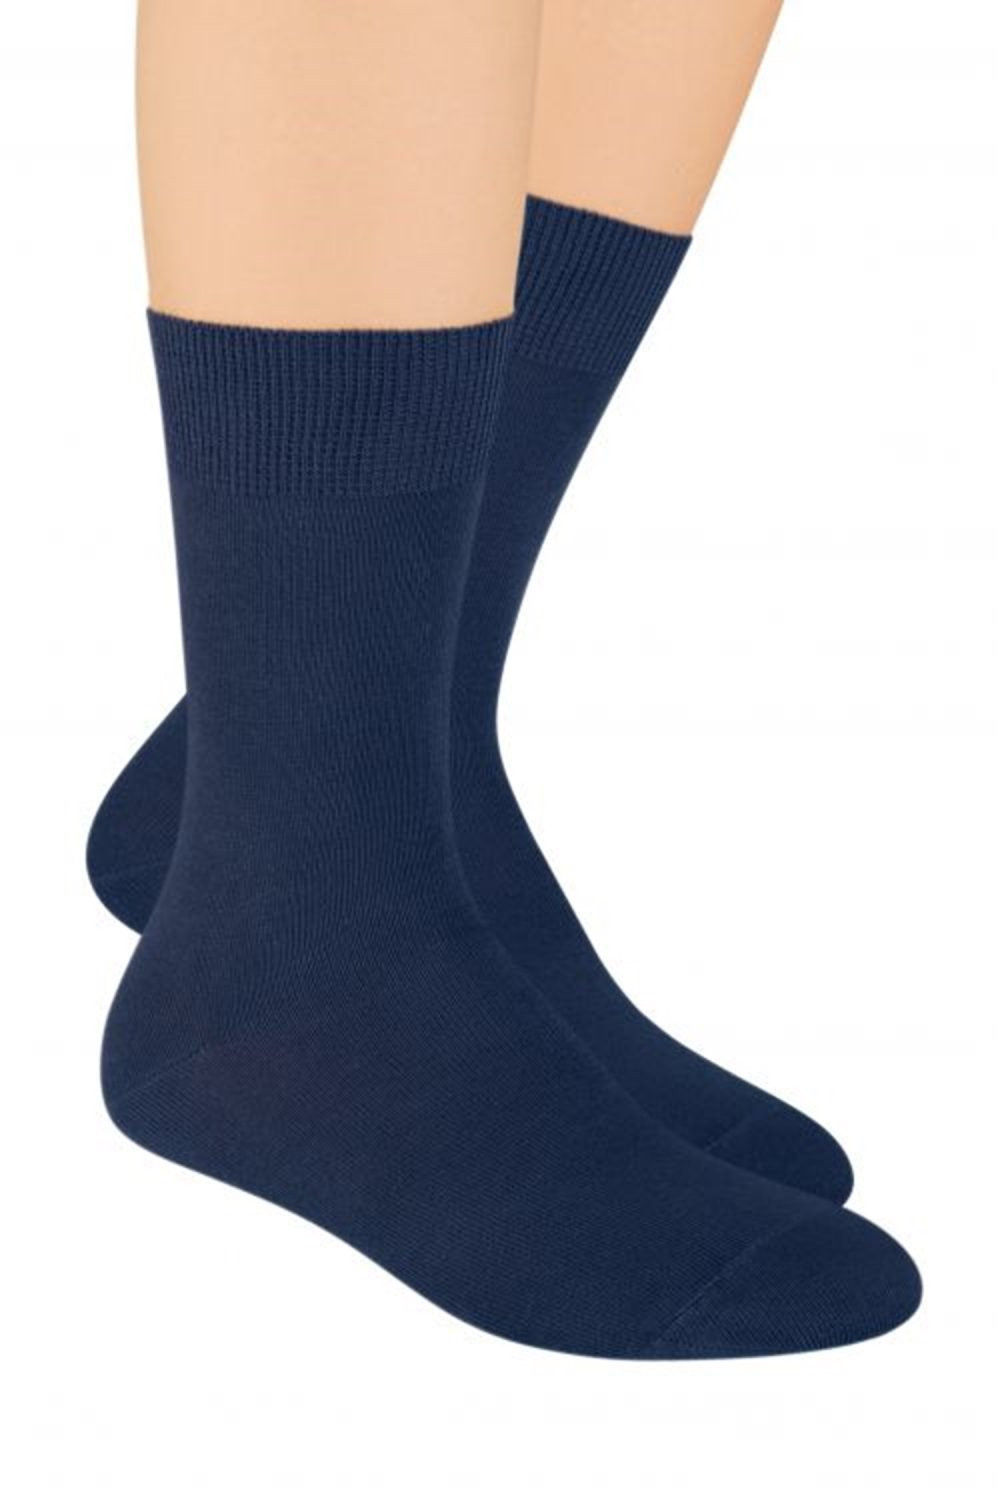 Pánské ponožky 048 tmavě modré - Steven 44-46 černá